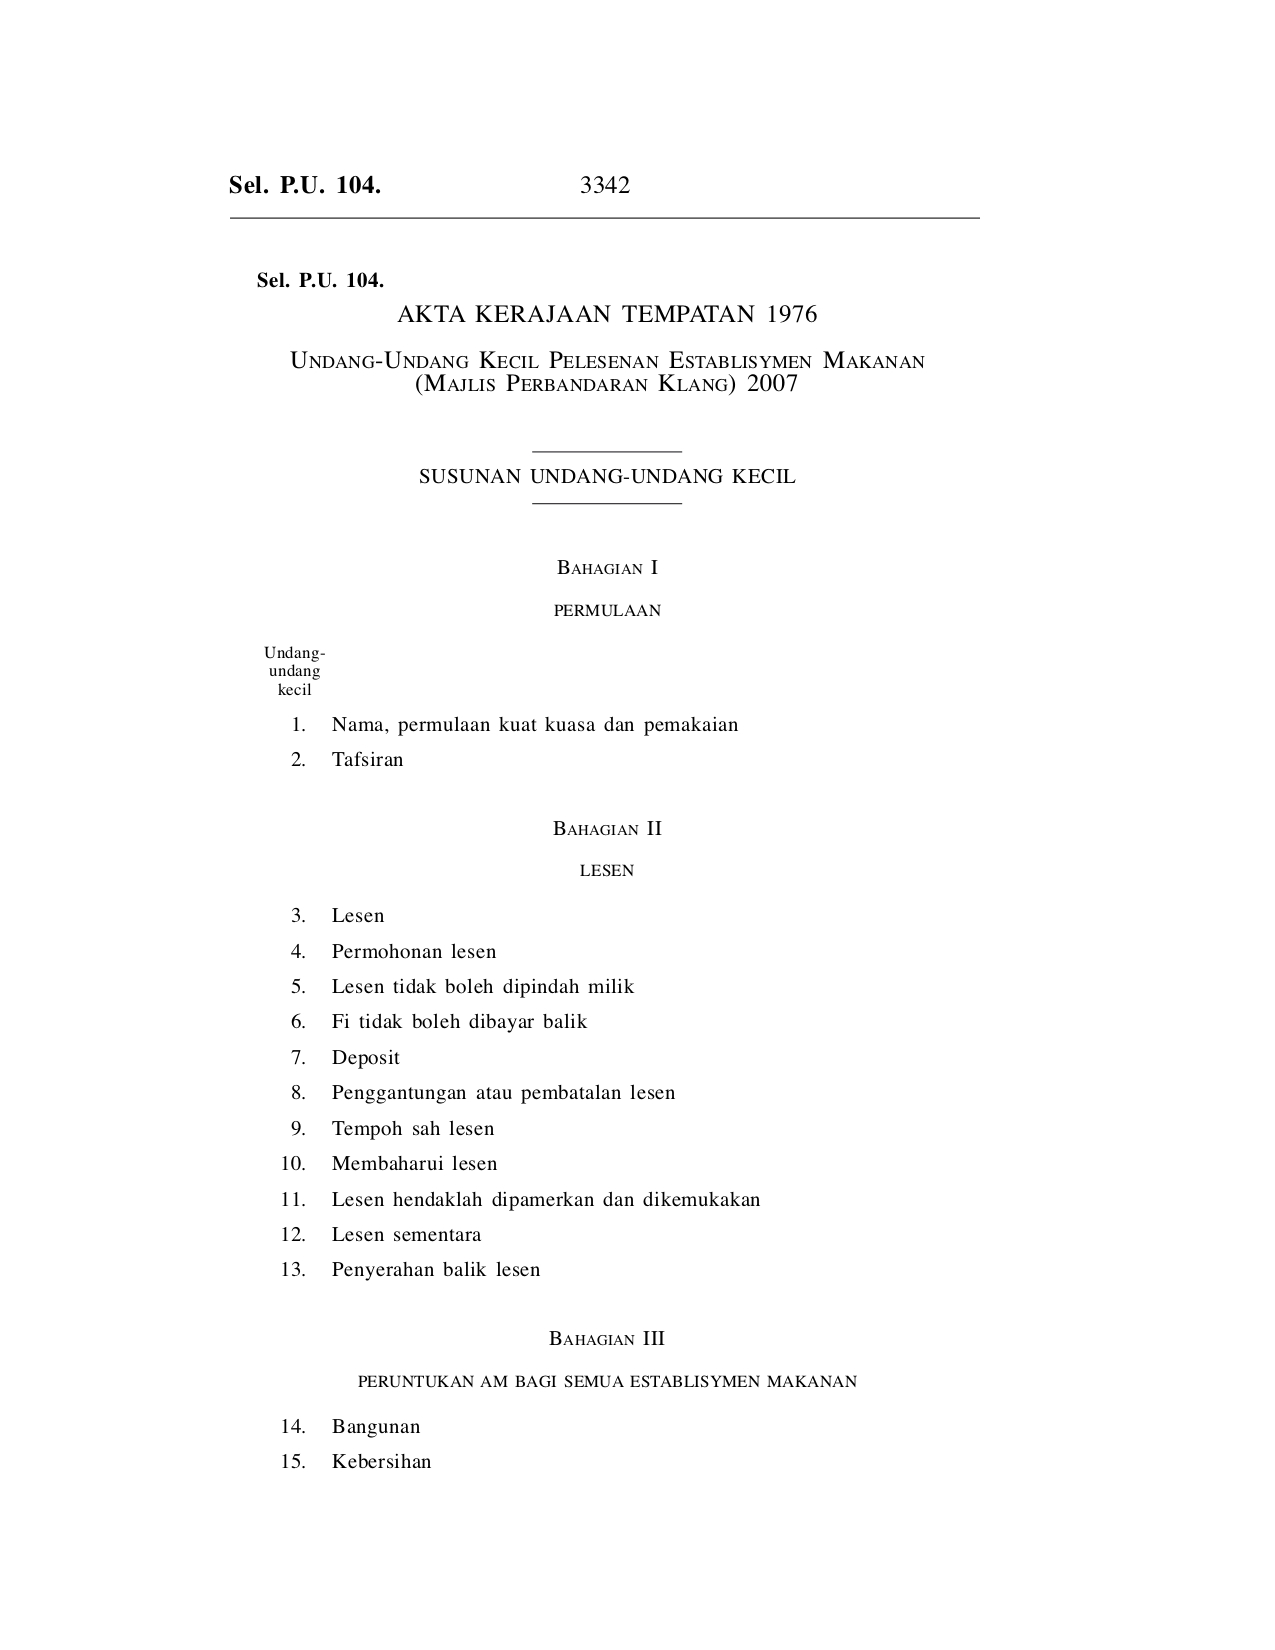 Undang-Undang Kecil Pelesenan Establisymen Makanan (Majlis Perbandaran Klang) 2007 - Akta Kerajaan Tempatan 1976